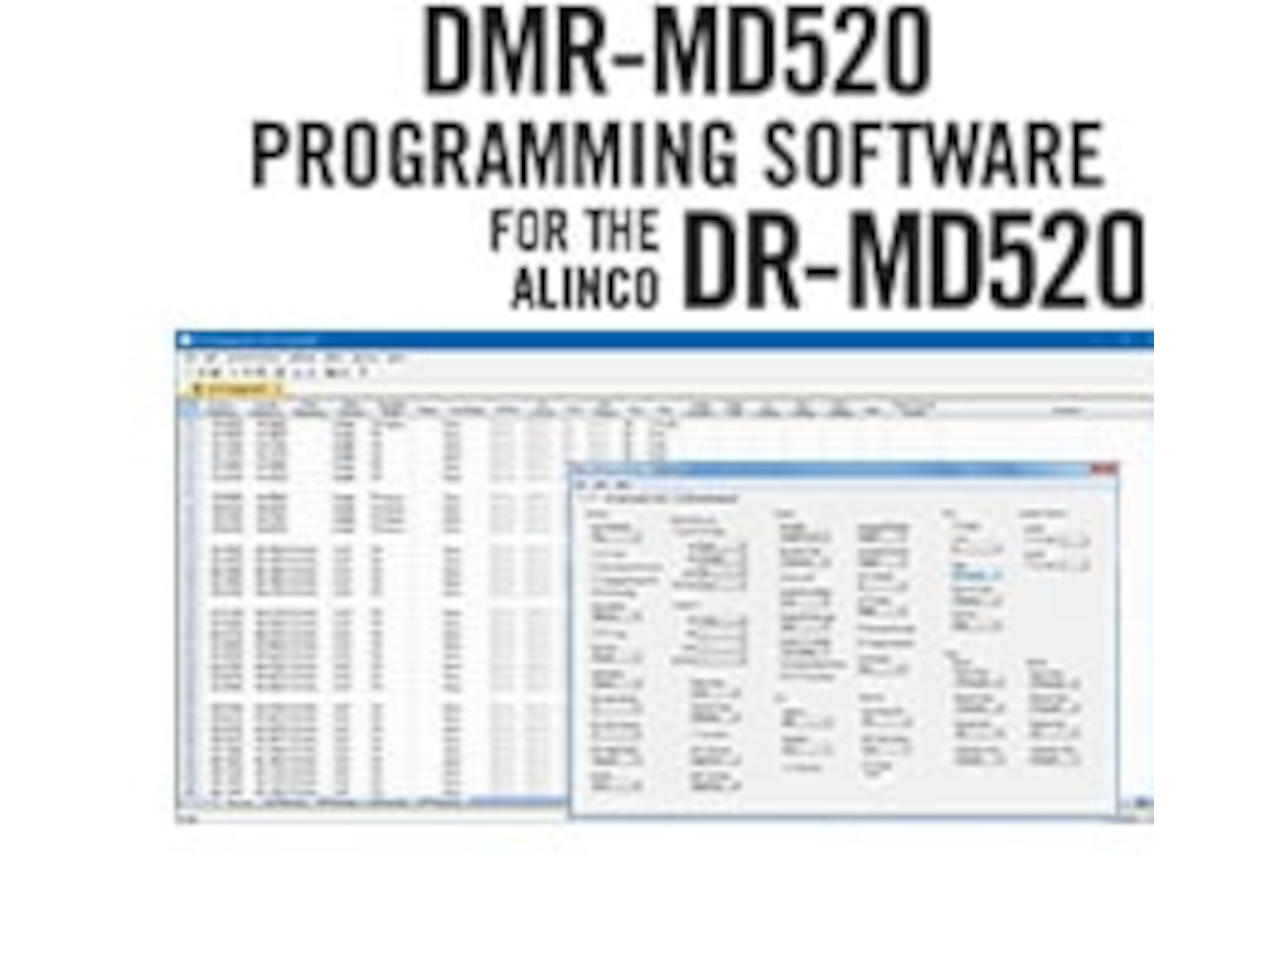 DMR-MD520